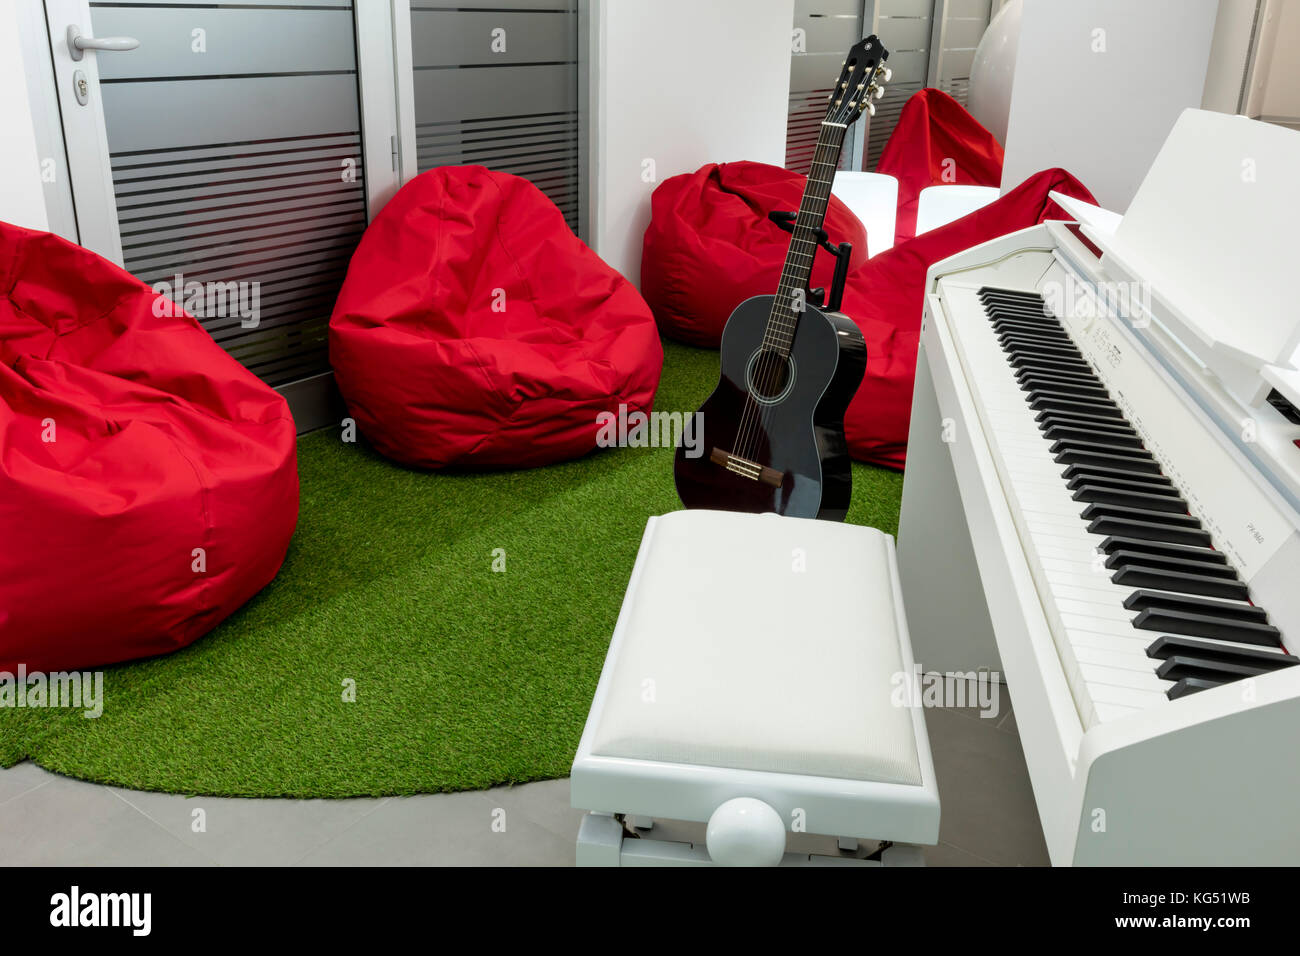 Moderne Musik - Zimmer, mit weißen Klavier und Gitarre Schwarz; Rot  Sitzsäcke im Hintergrund Stockfotografie - Alamy